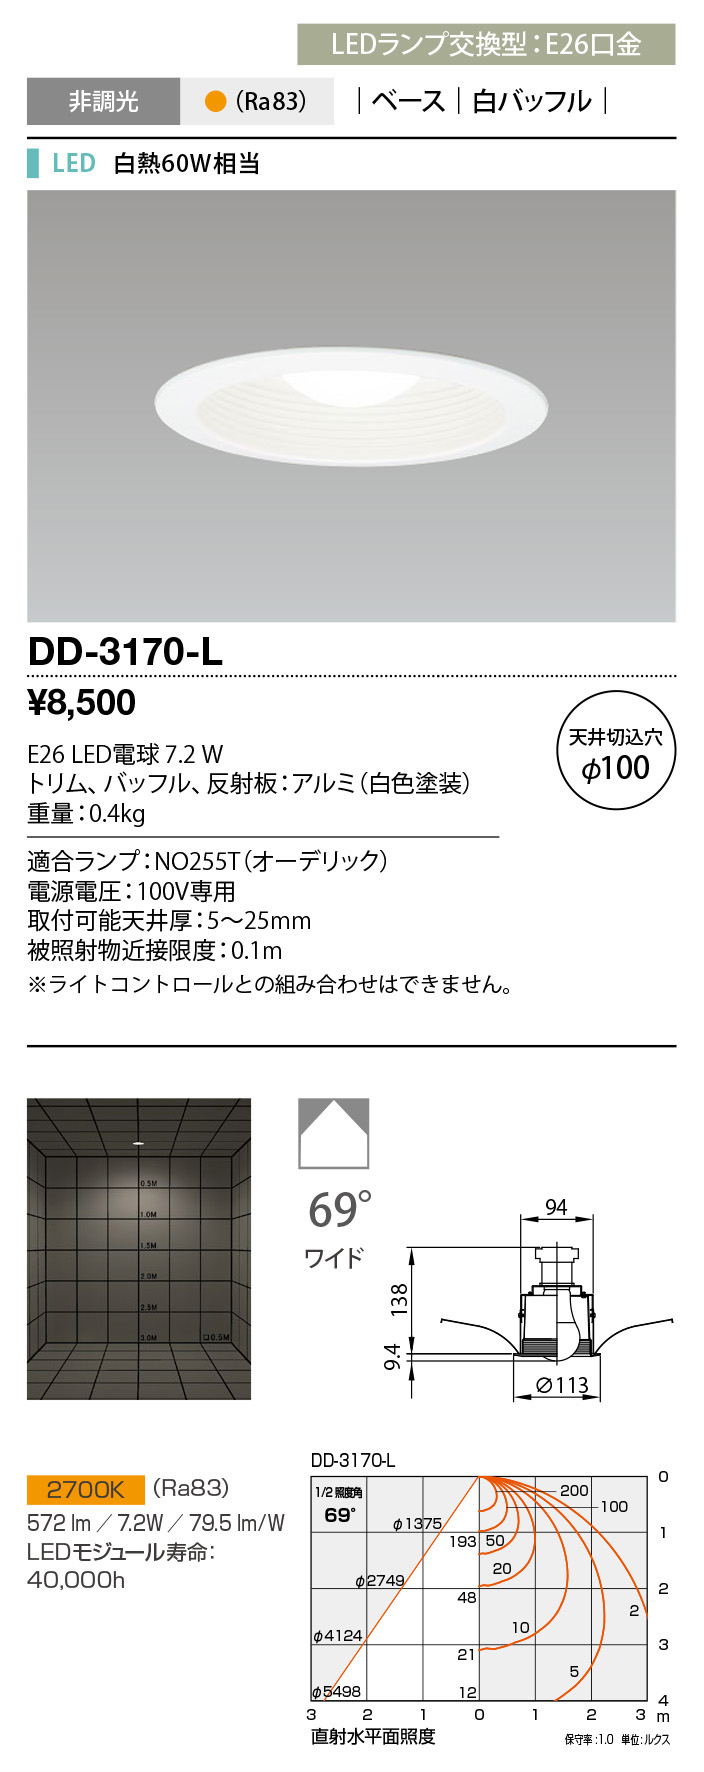 DD-3170-L